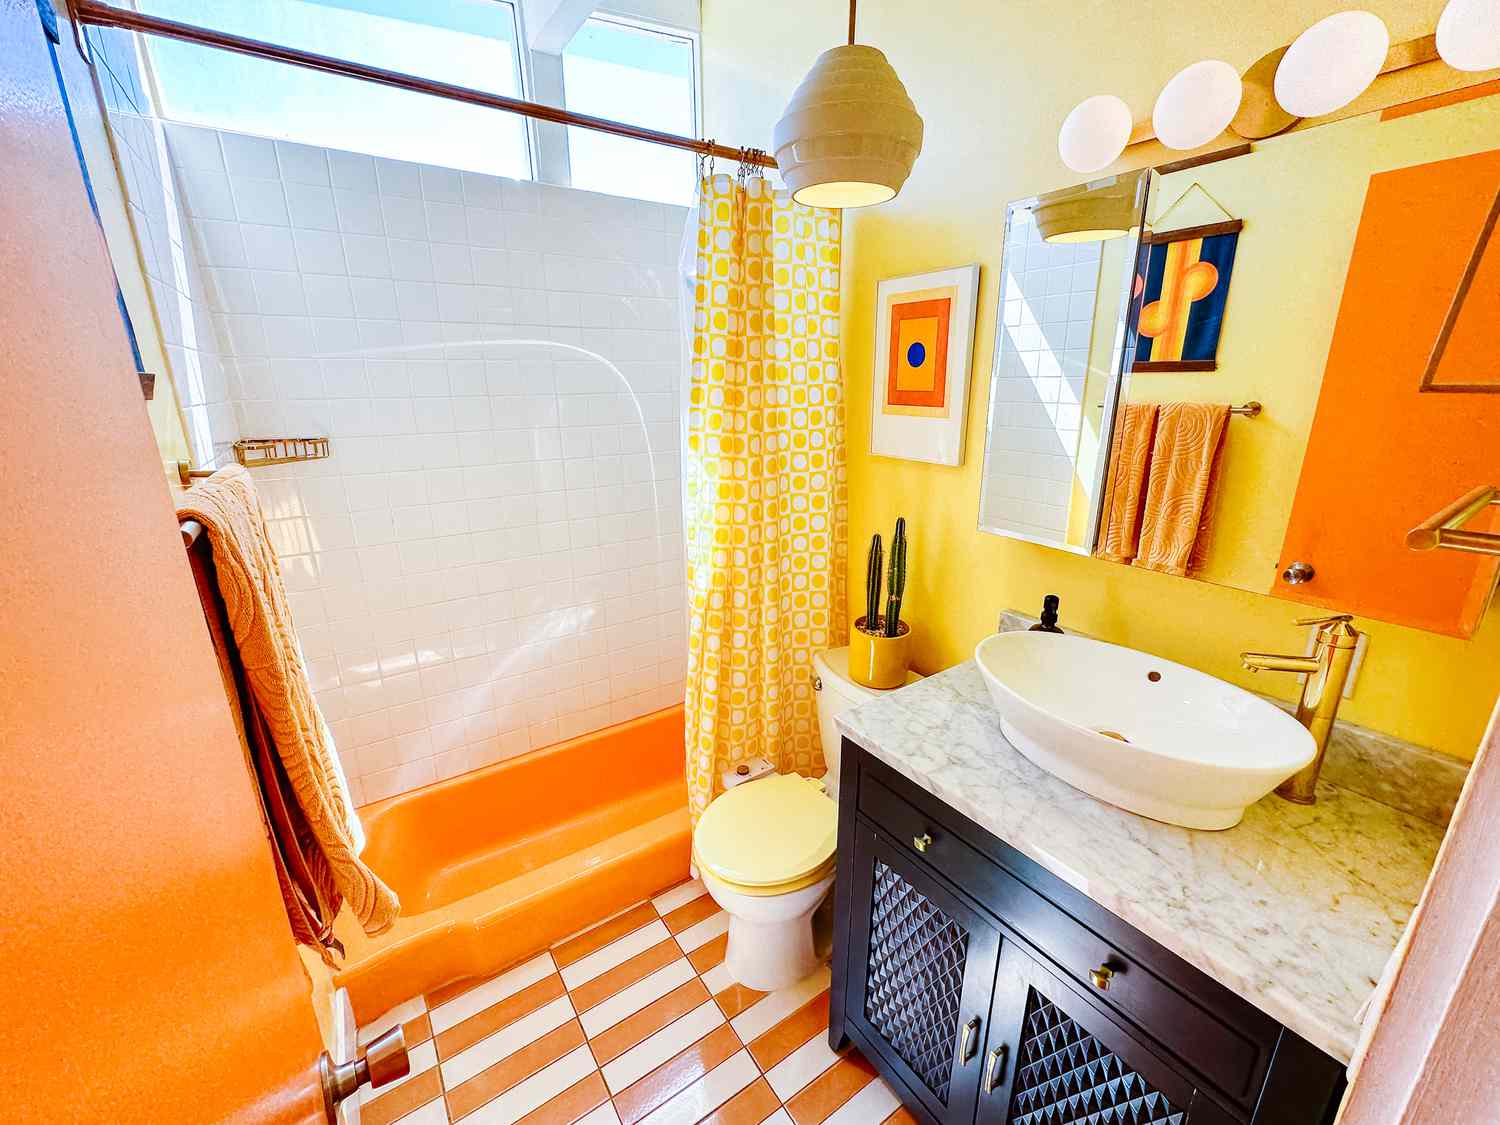 Baño amarillo y naranja brillante